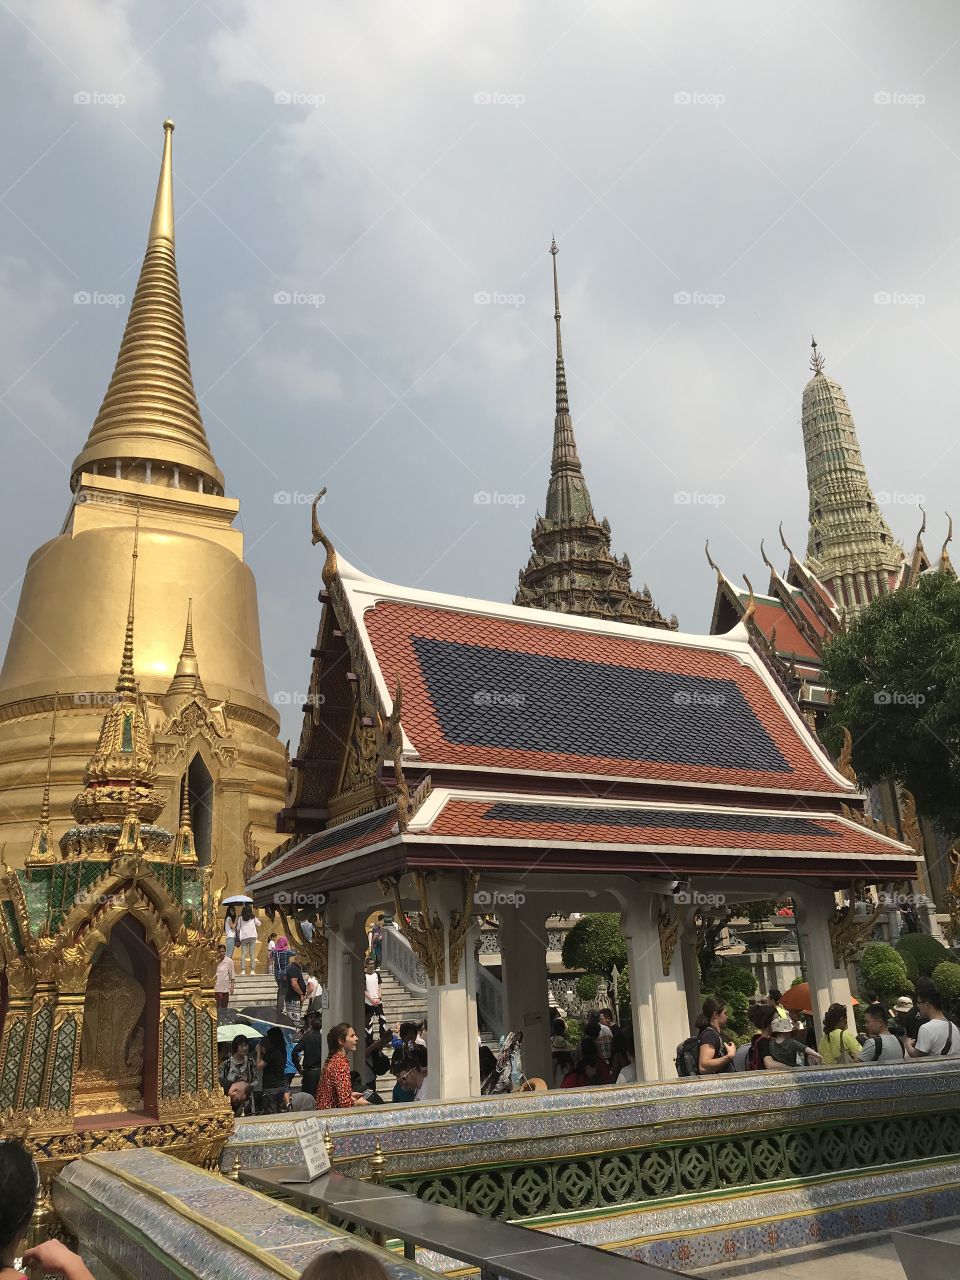 Palace views. Bangkok, Thailand. 